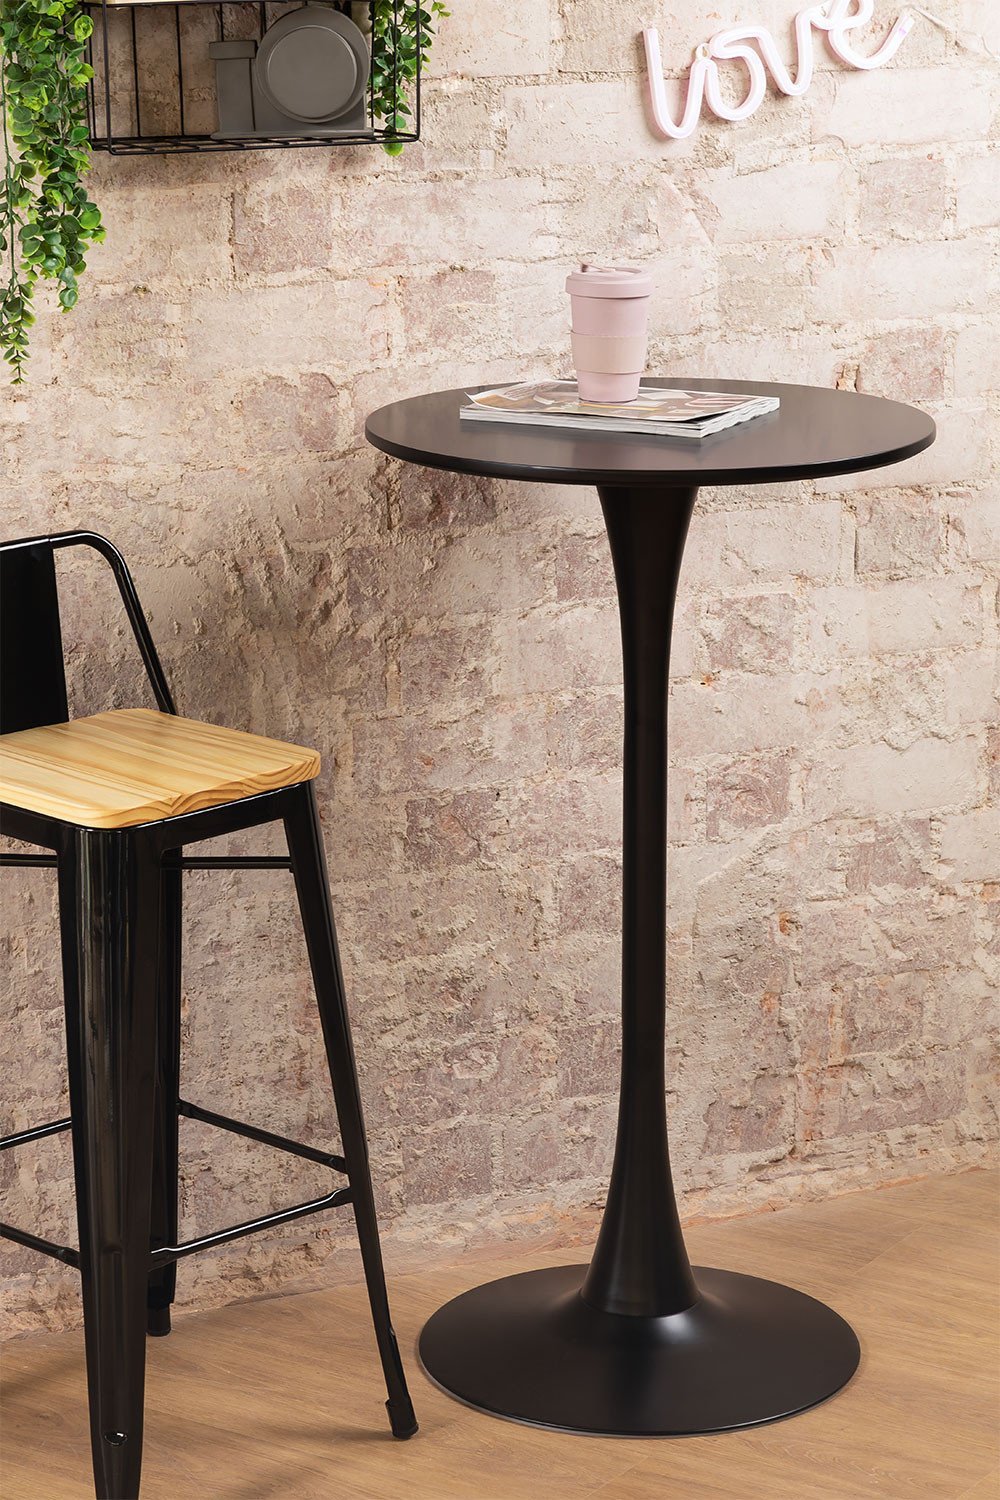 Ronde hoge tafel in MDF en metaal (Ø60 cm) Ivet Style, galerij beeld 1